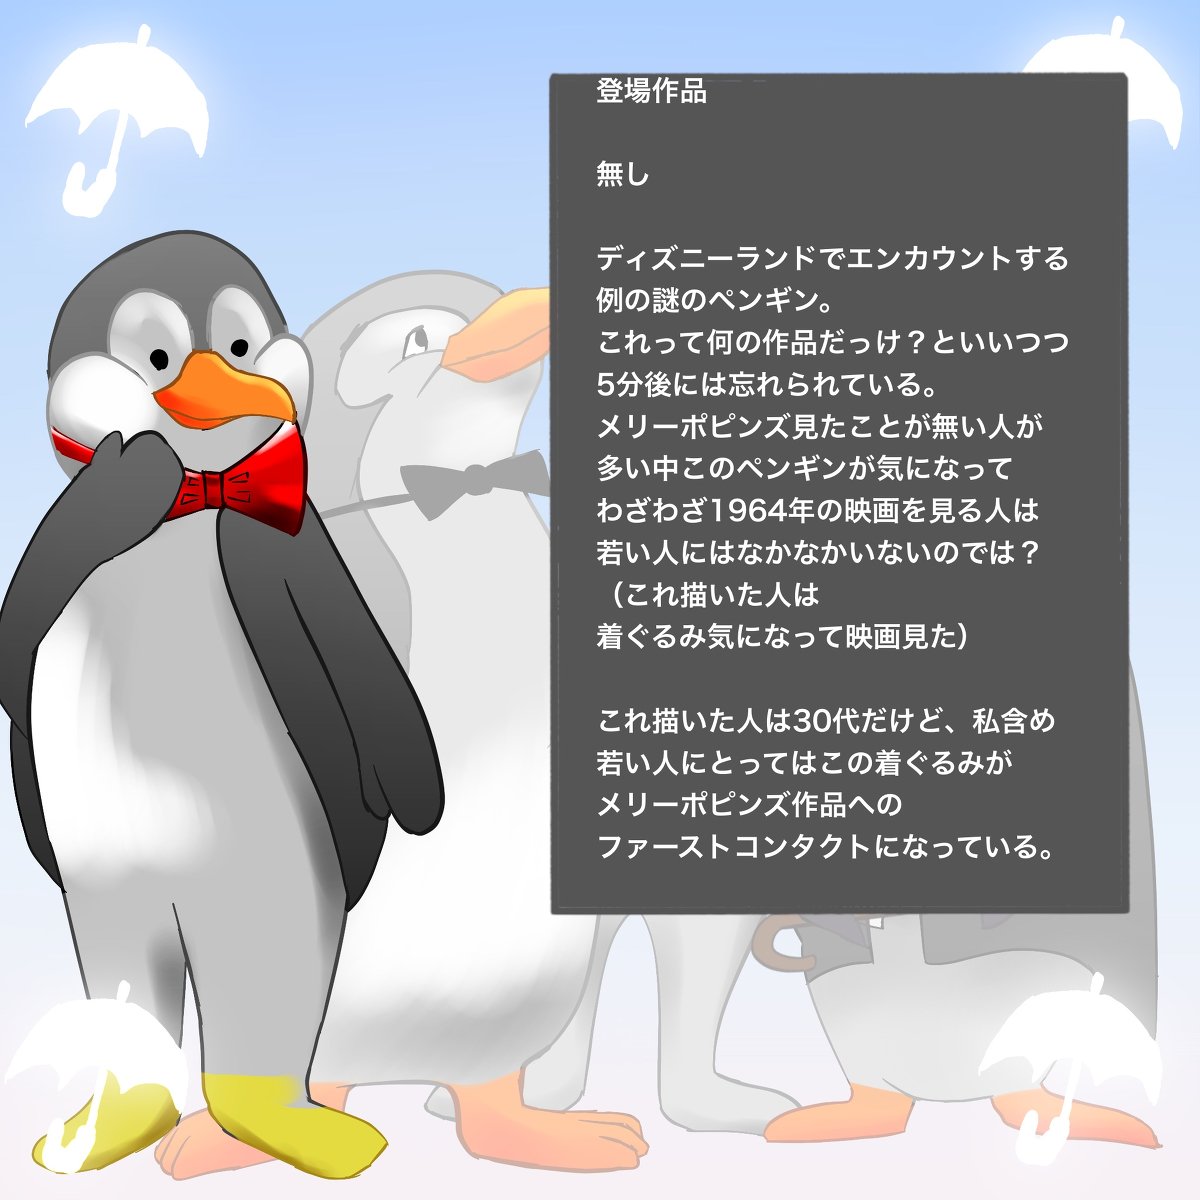 夏木 純 A Twitter メリー ポピンズのペンギン メリー ポピンズ ペンギン ディズニー Disney 映画 ウォルト ディズニーの約束 T Co S5tz0qpevm